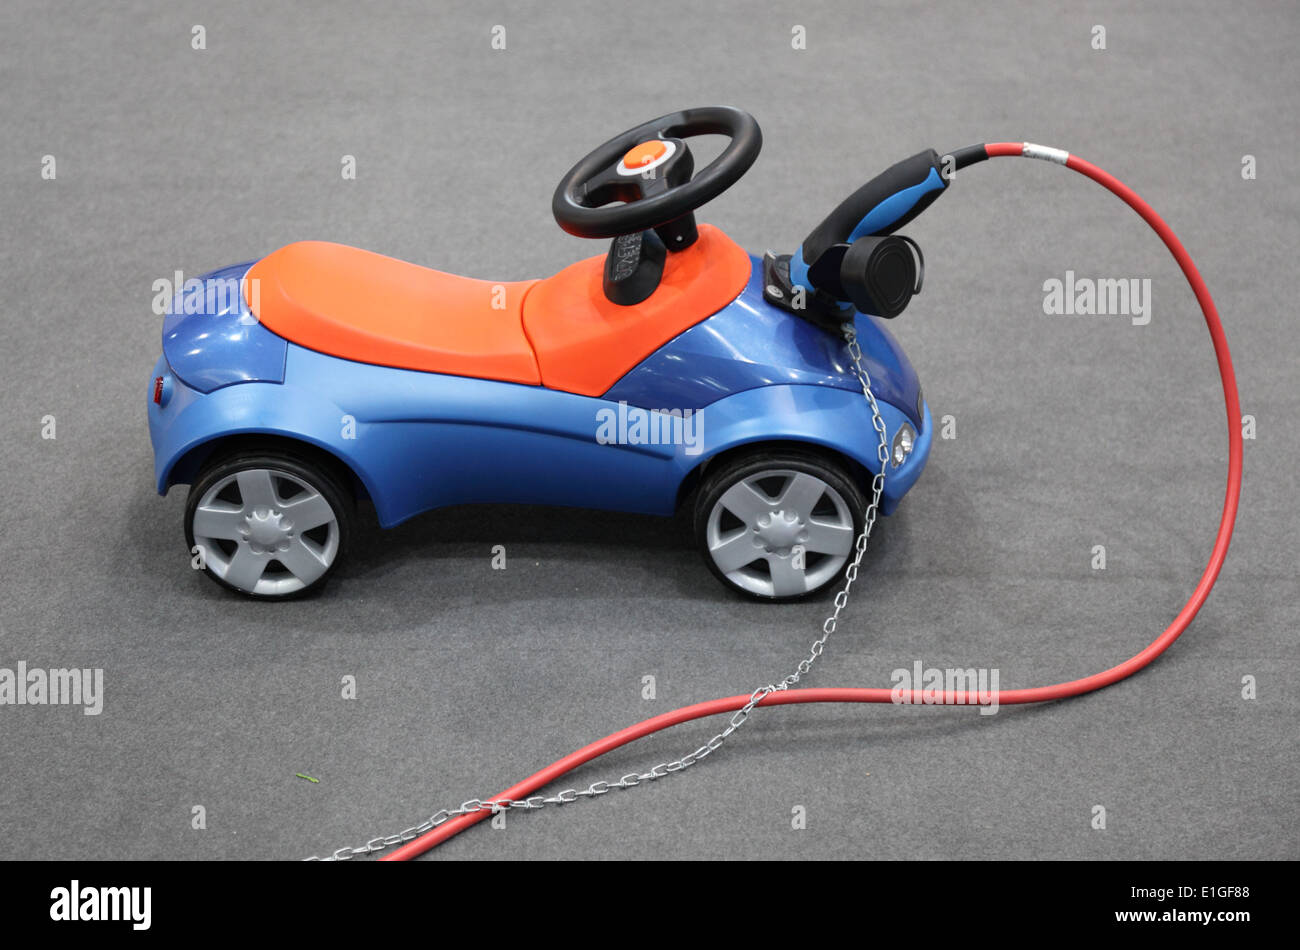 Bobby-Car électrique voiture jouet pour les enfants Photo Stock - Alamy